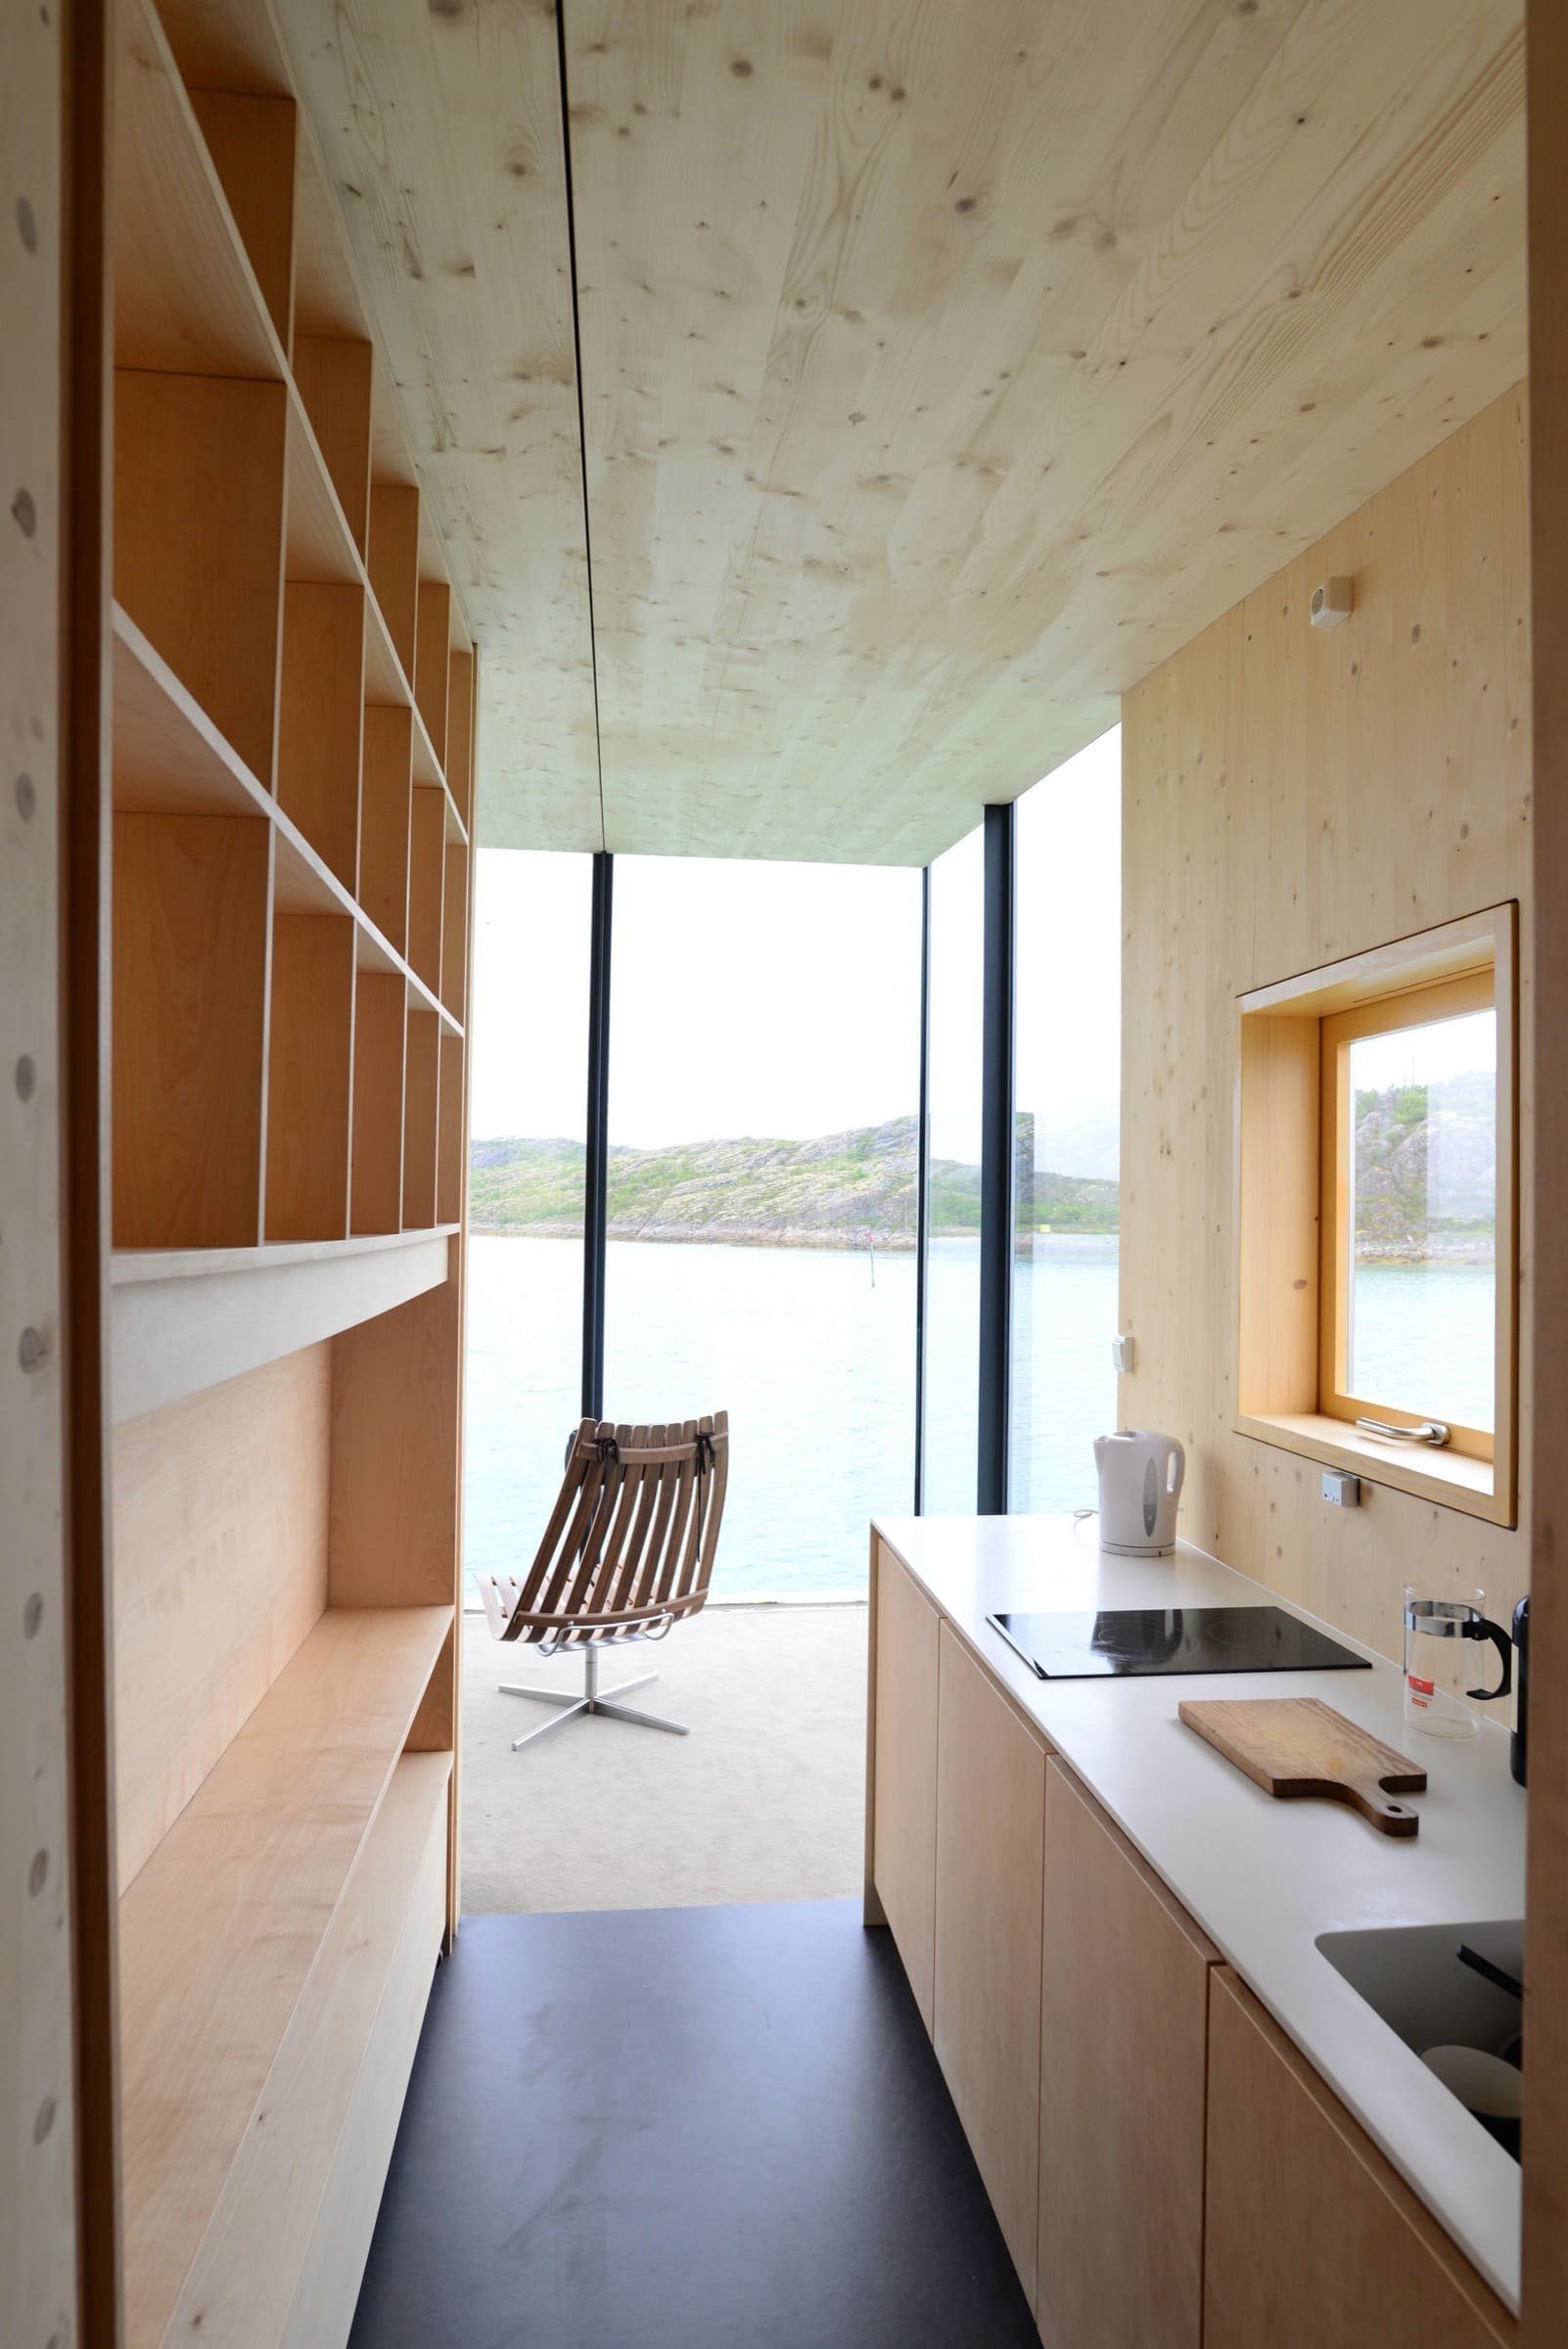 Moderní komplex u pobřeží Norska